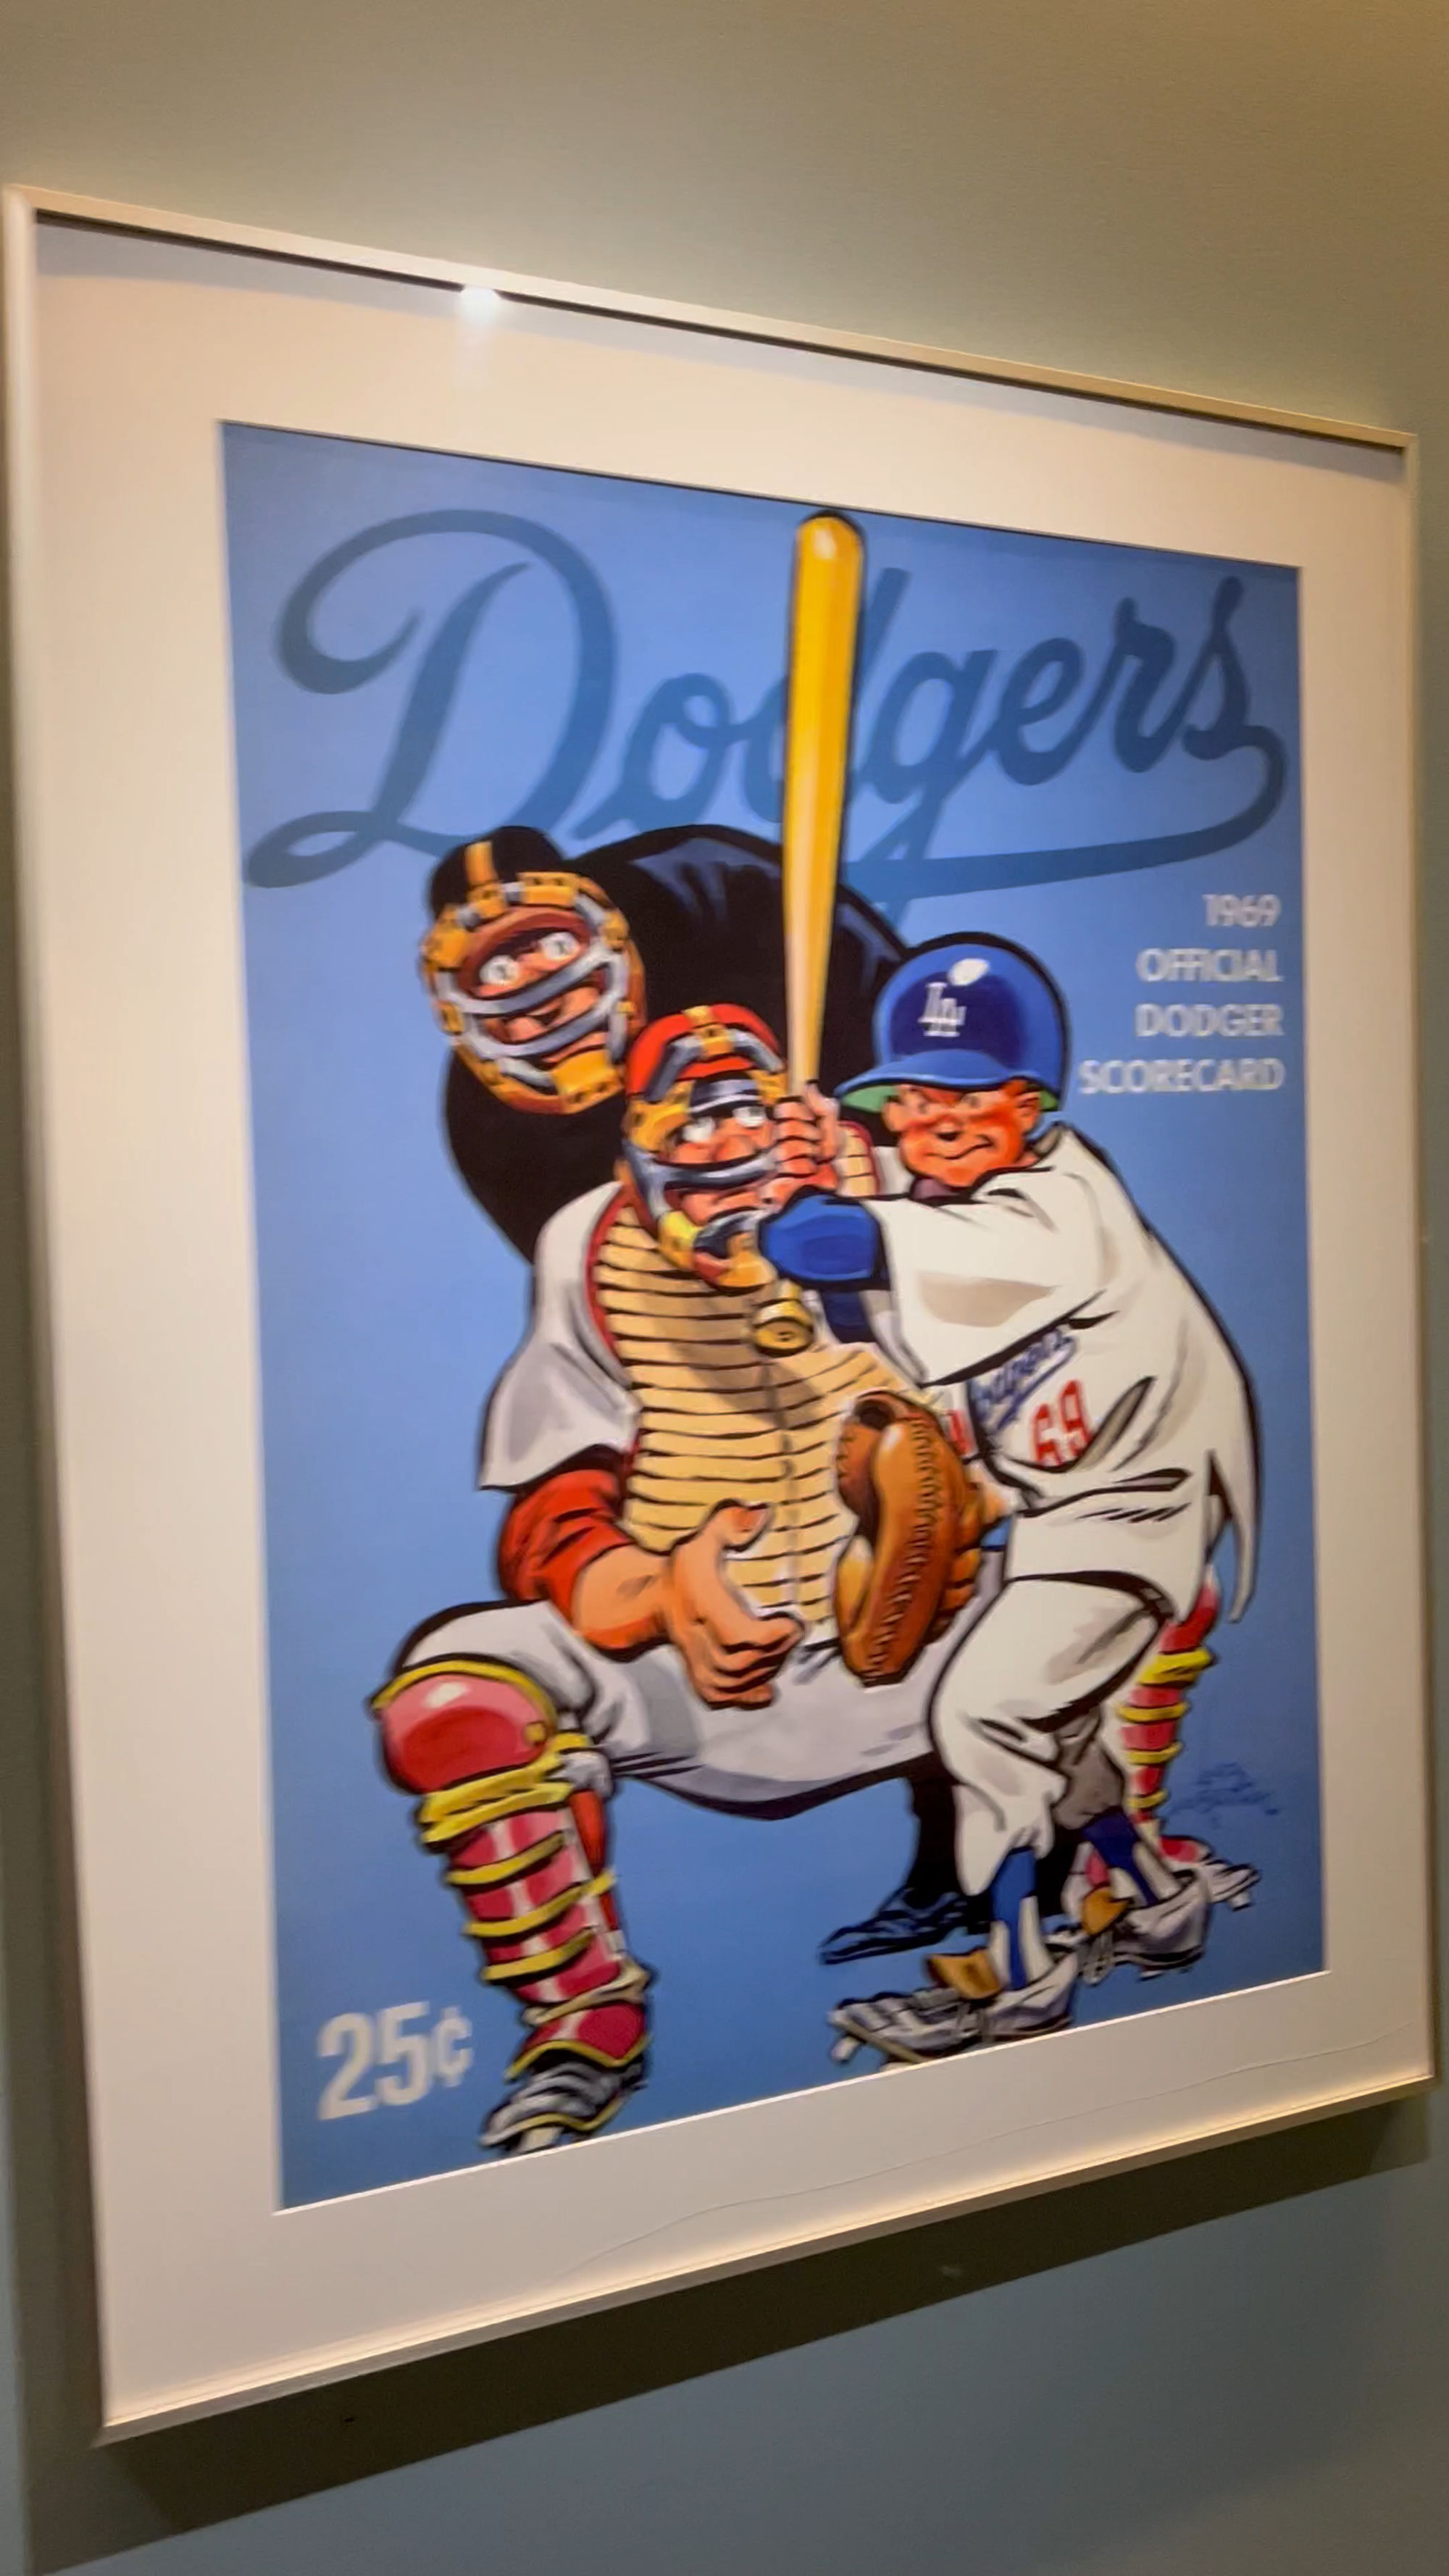 Dodgers 1969 Scorecard